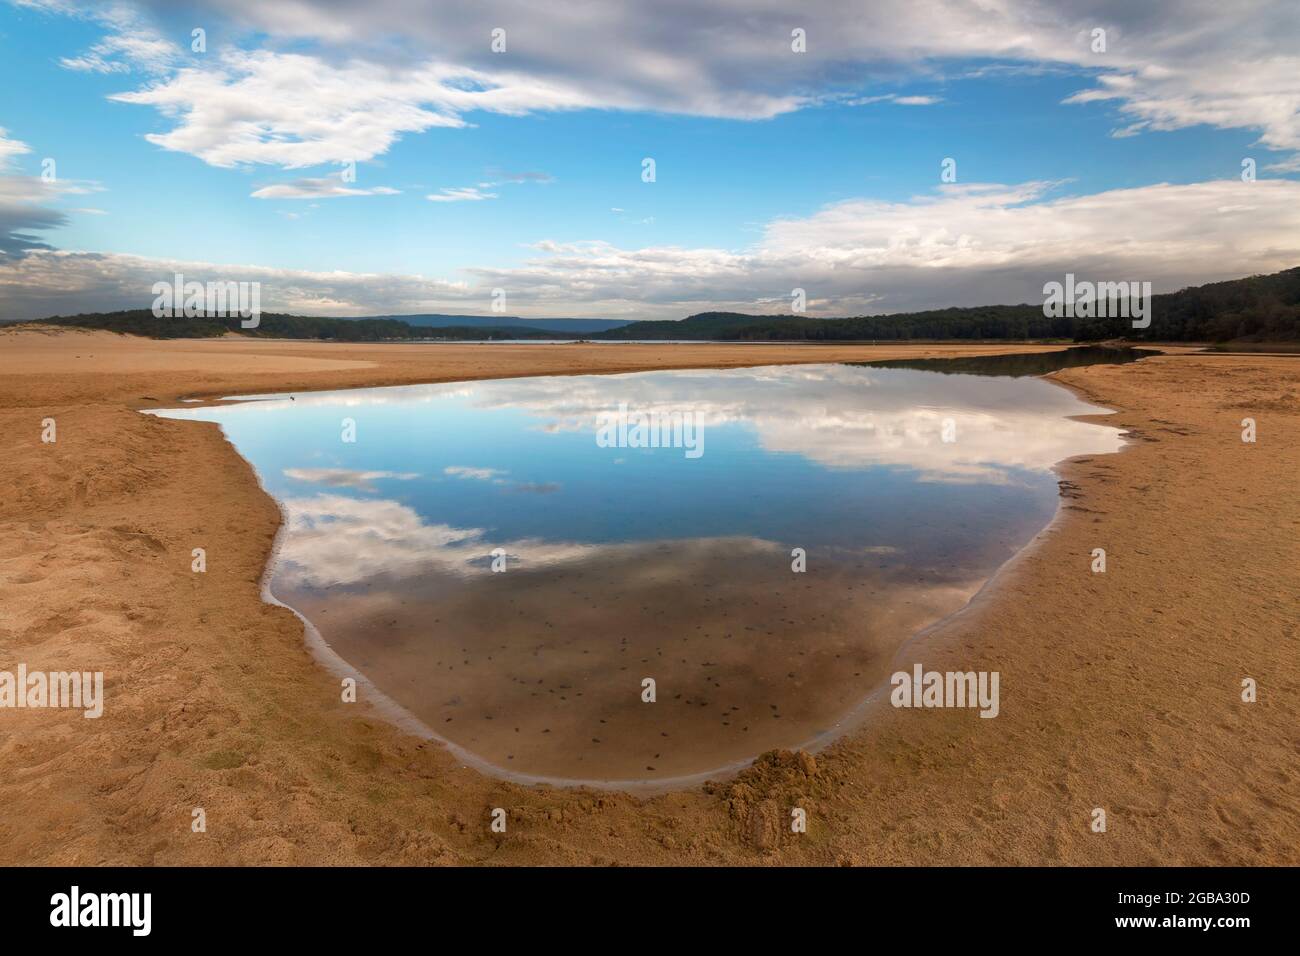 una vista di una spiaggia accanto ad un corpo d'acqua riflesso Foto Stock